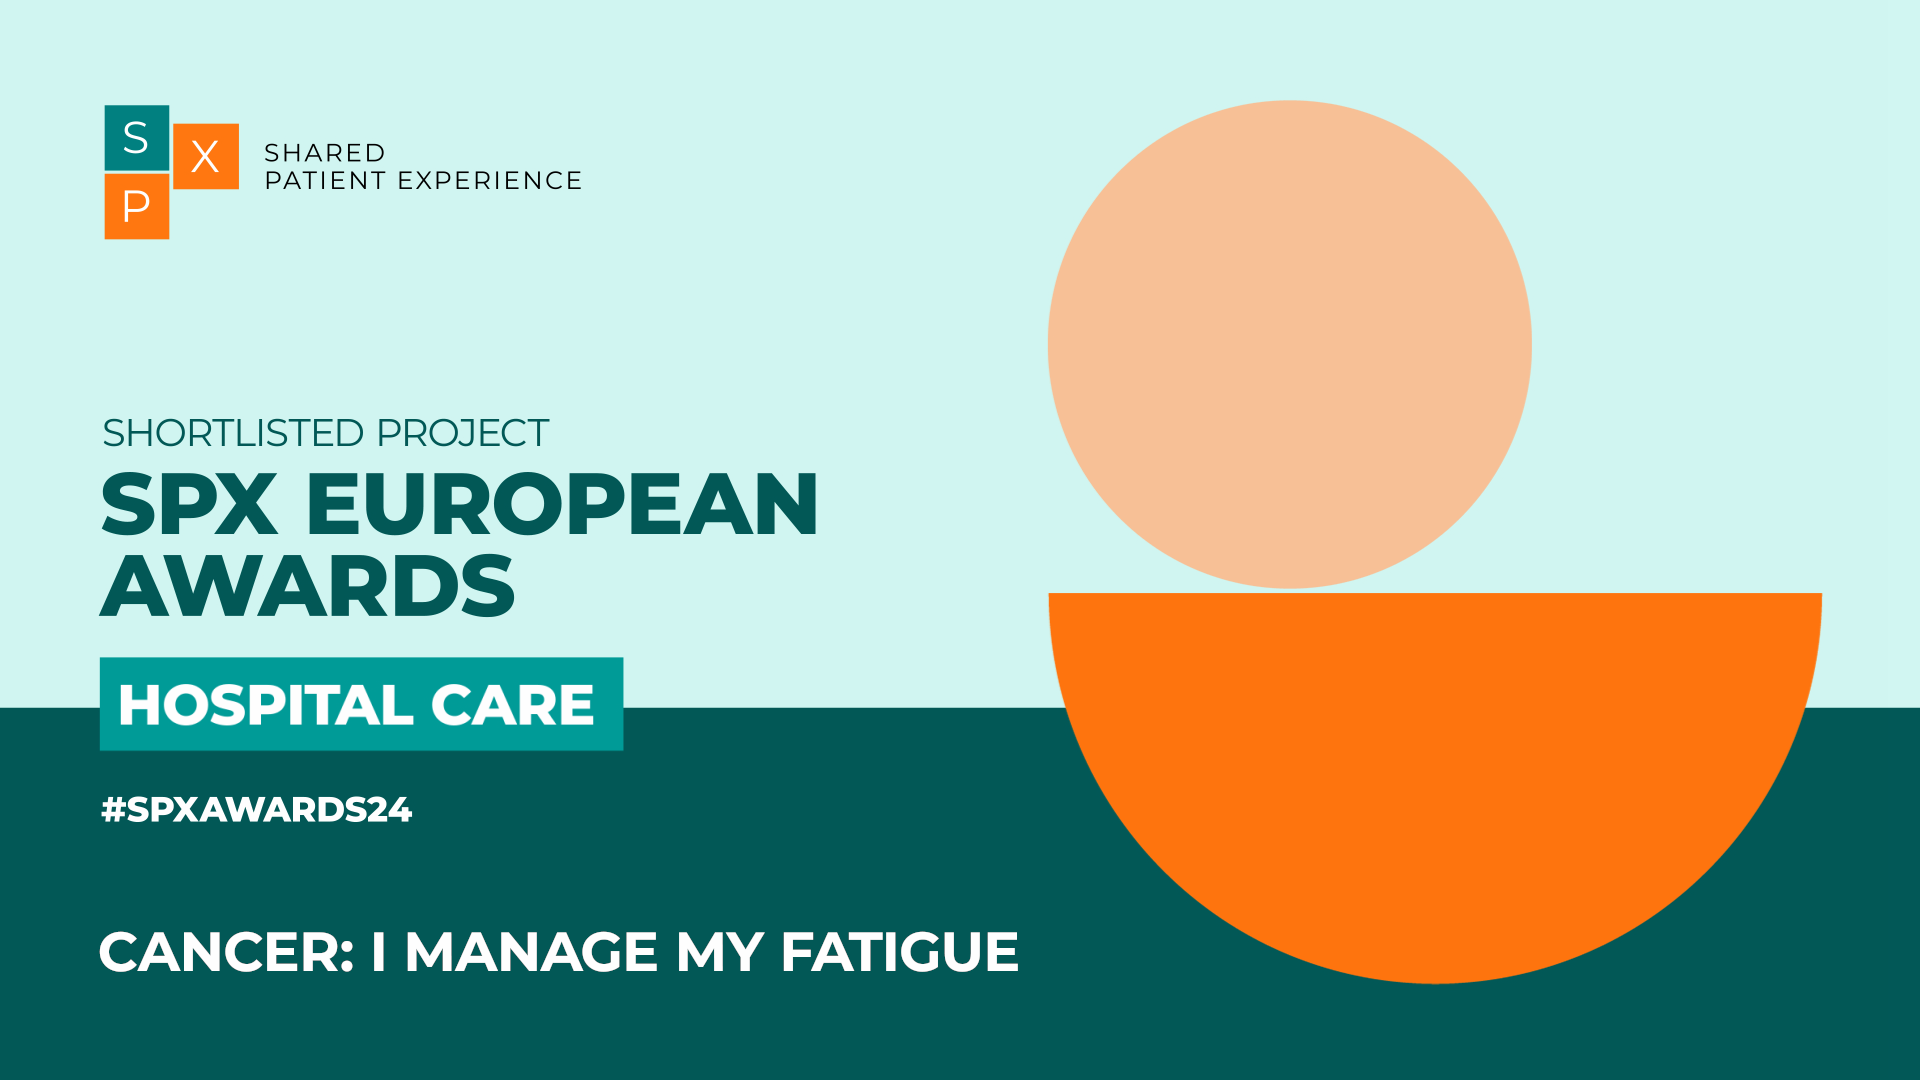 1 - Cancer: I manage my fatigue